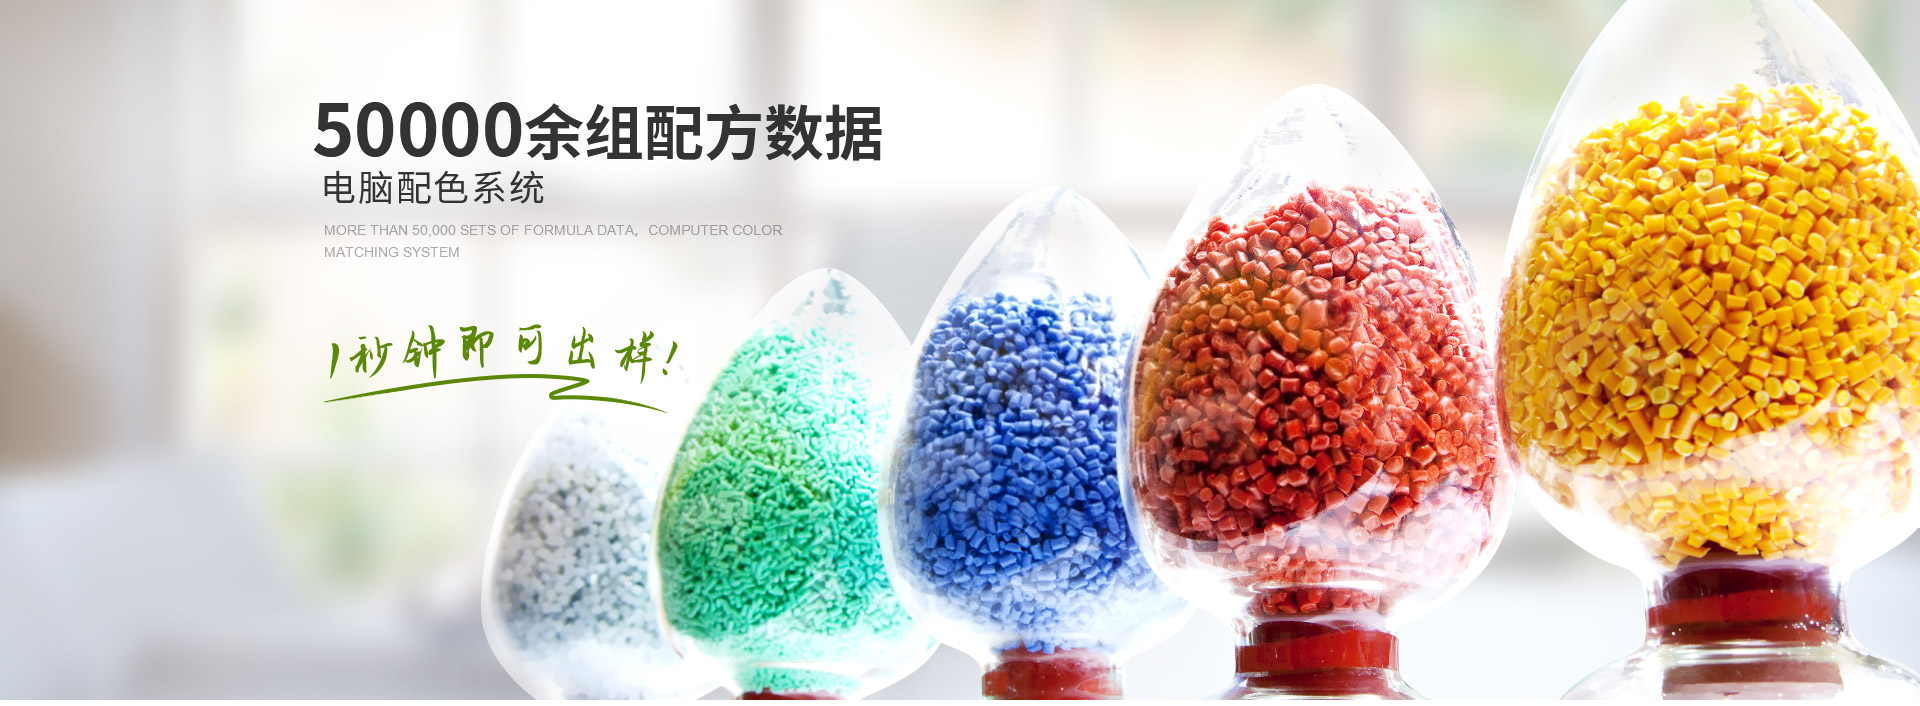 中新华美染色塑料颗粒,30000余组配方数据